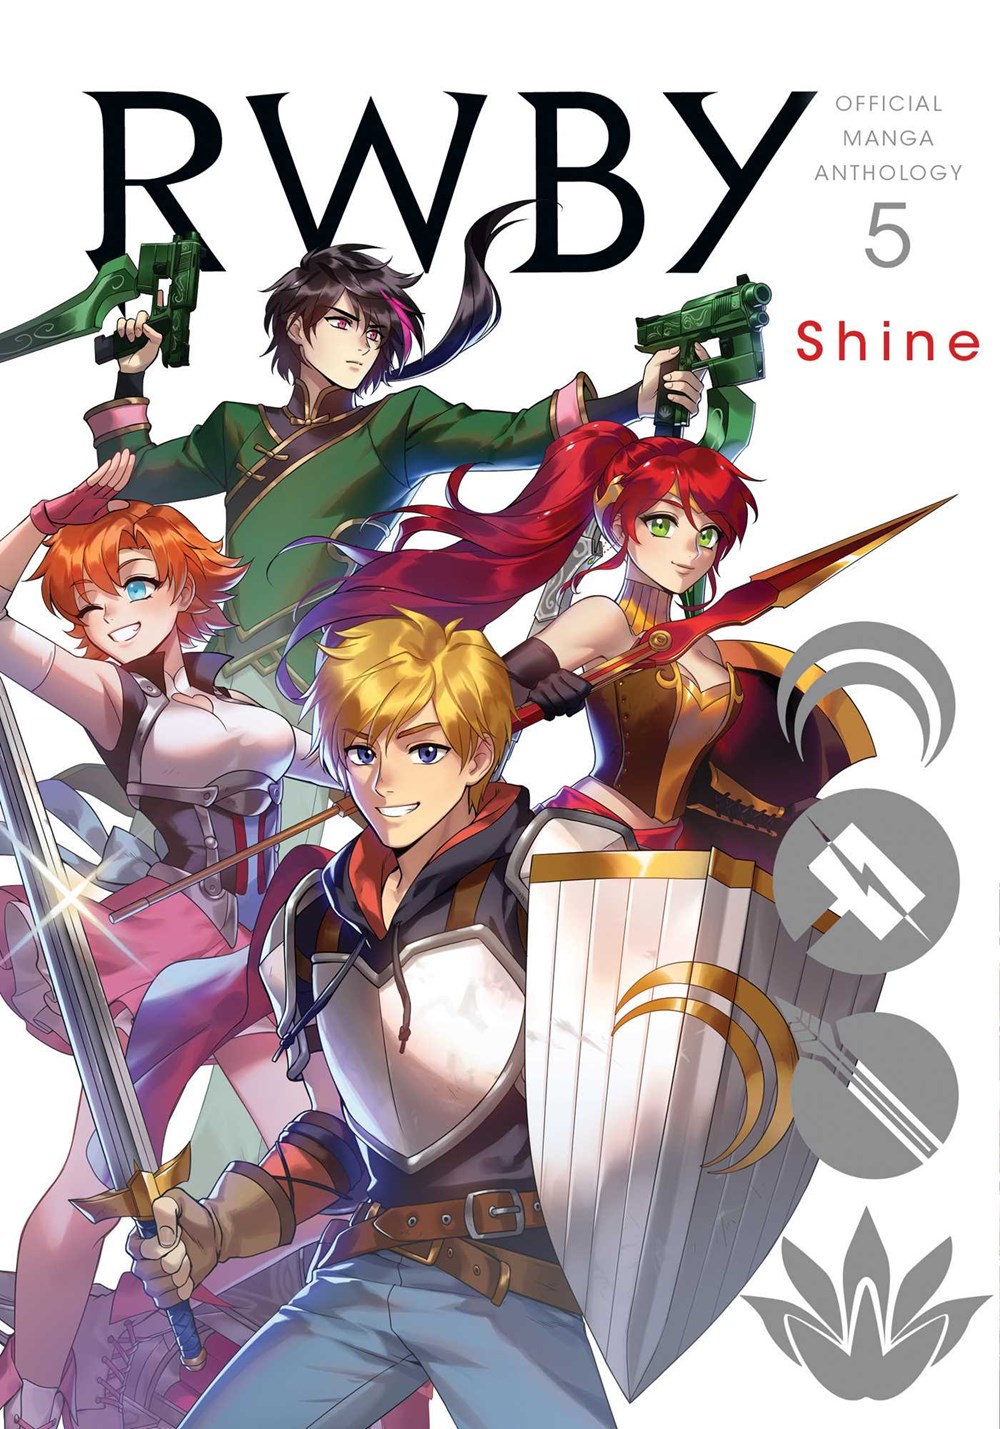 Rwby: Official Manga Anthology  Vol. 5: Shine